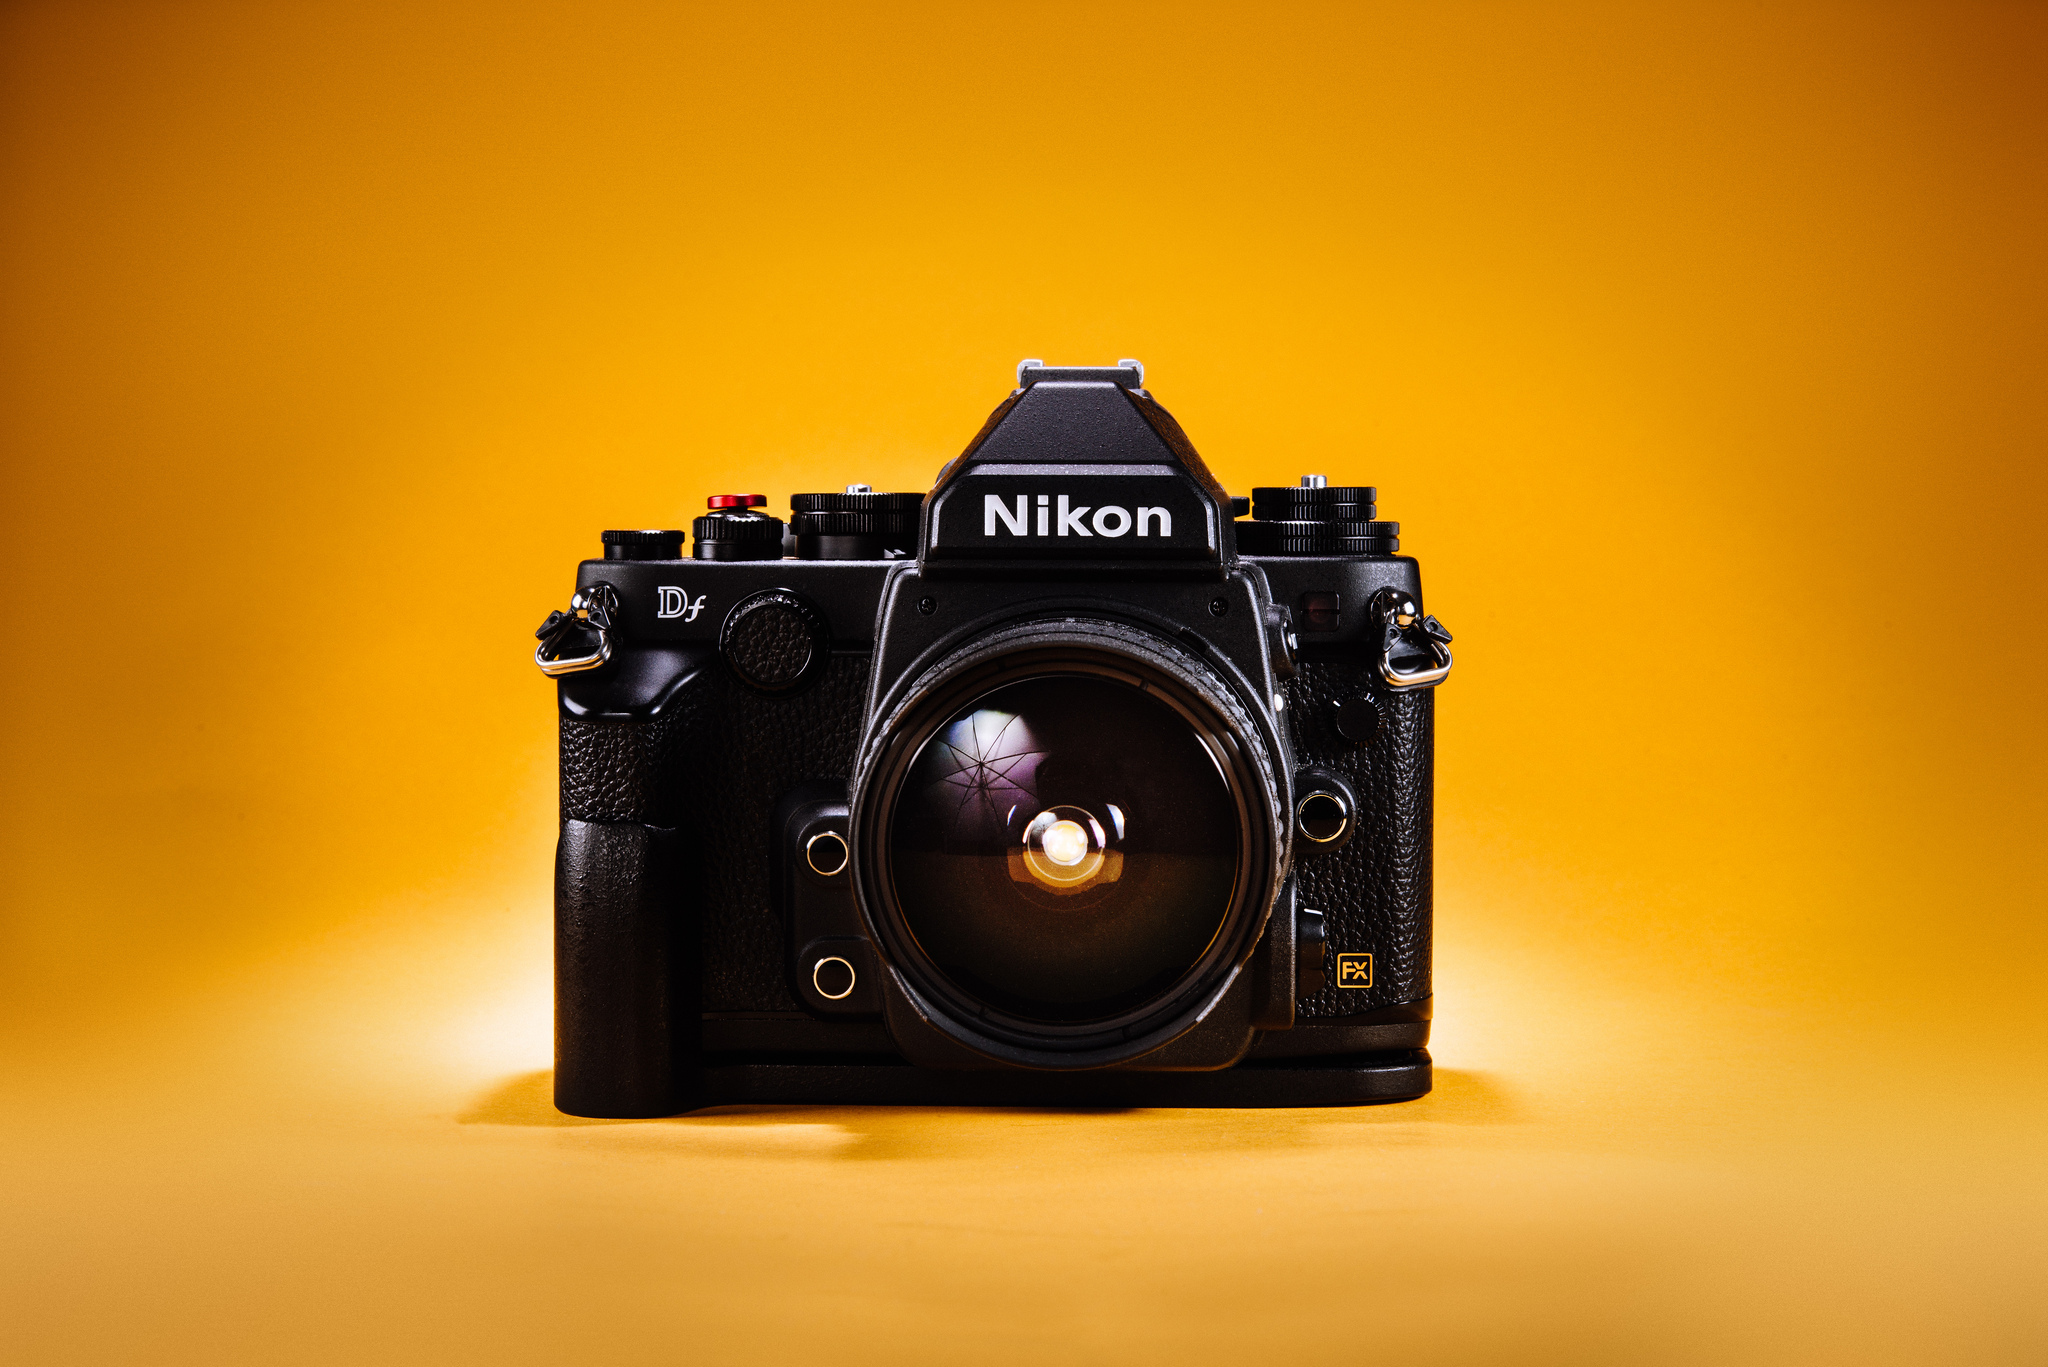 Nikon z5